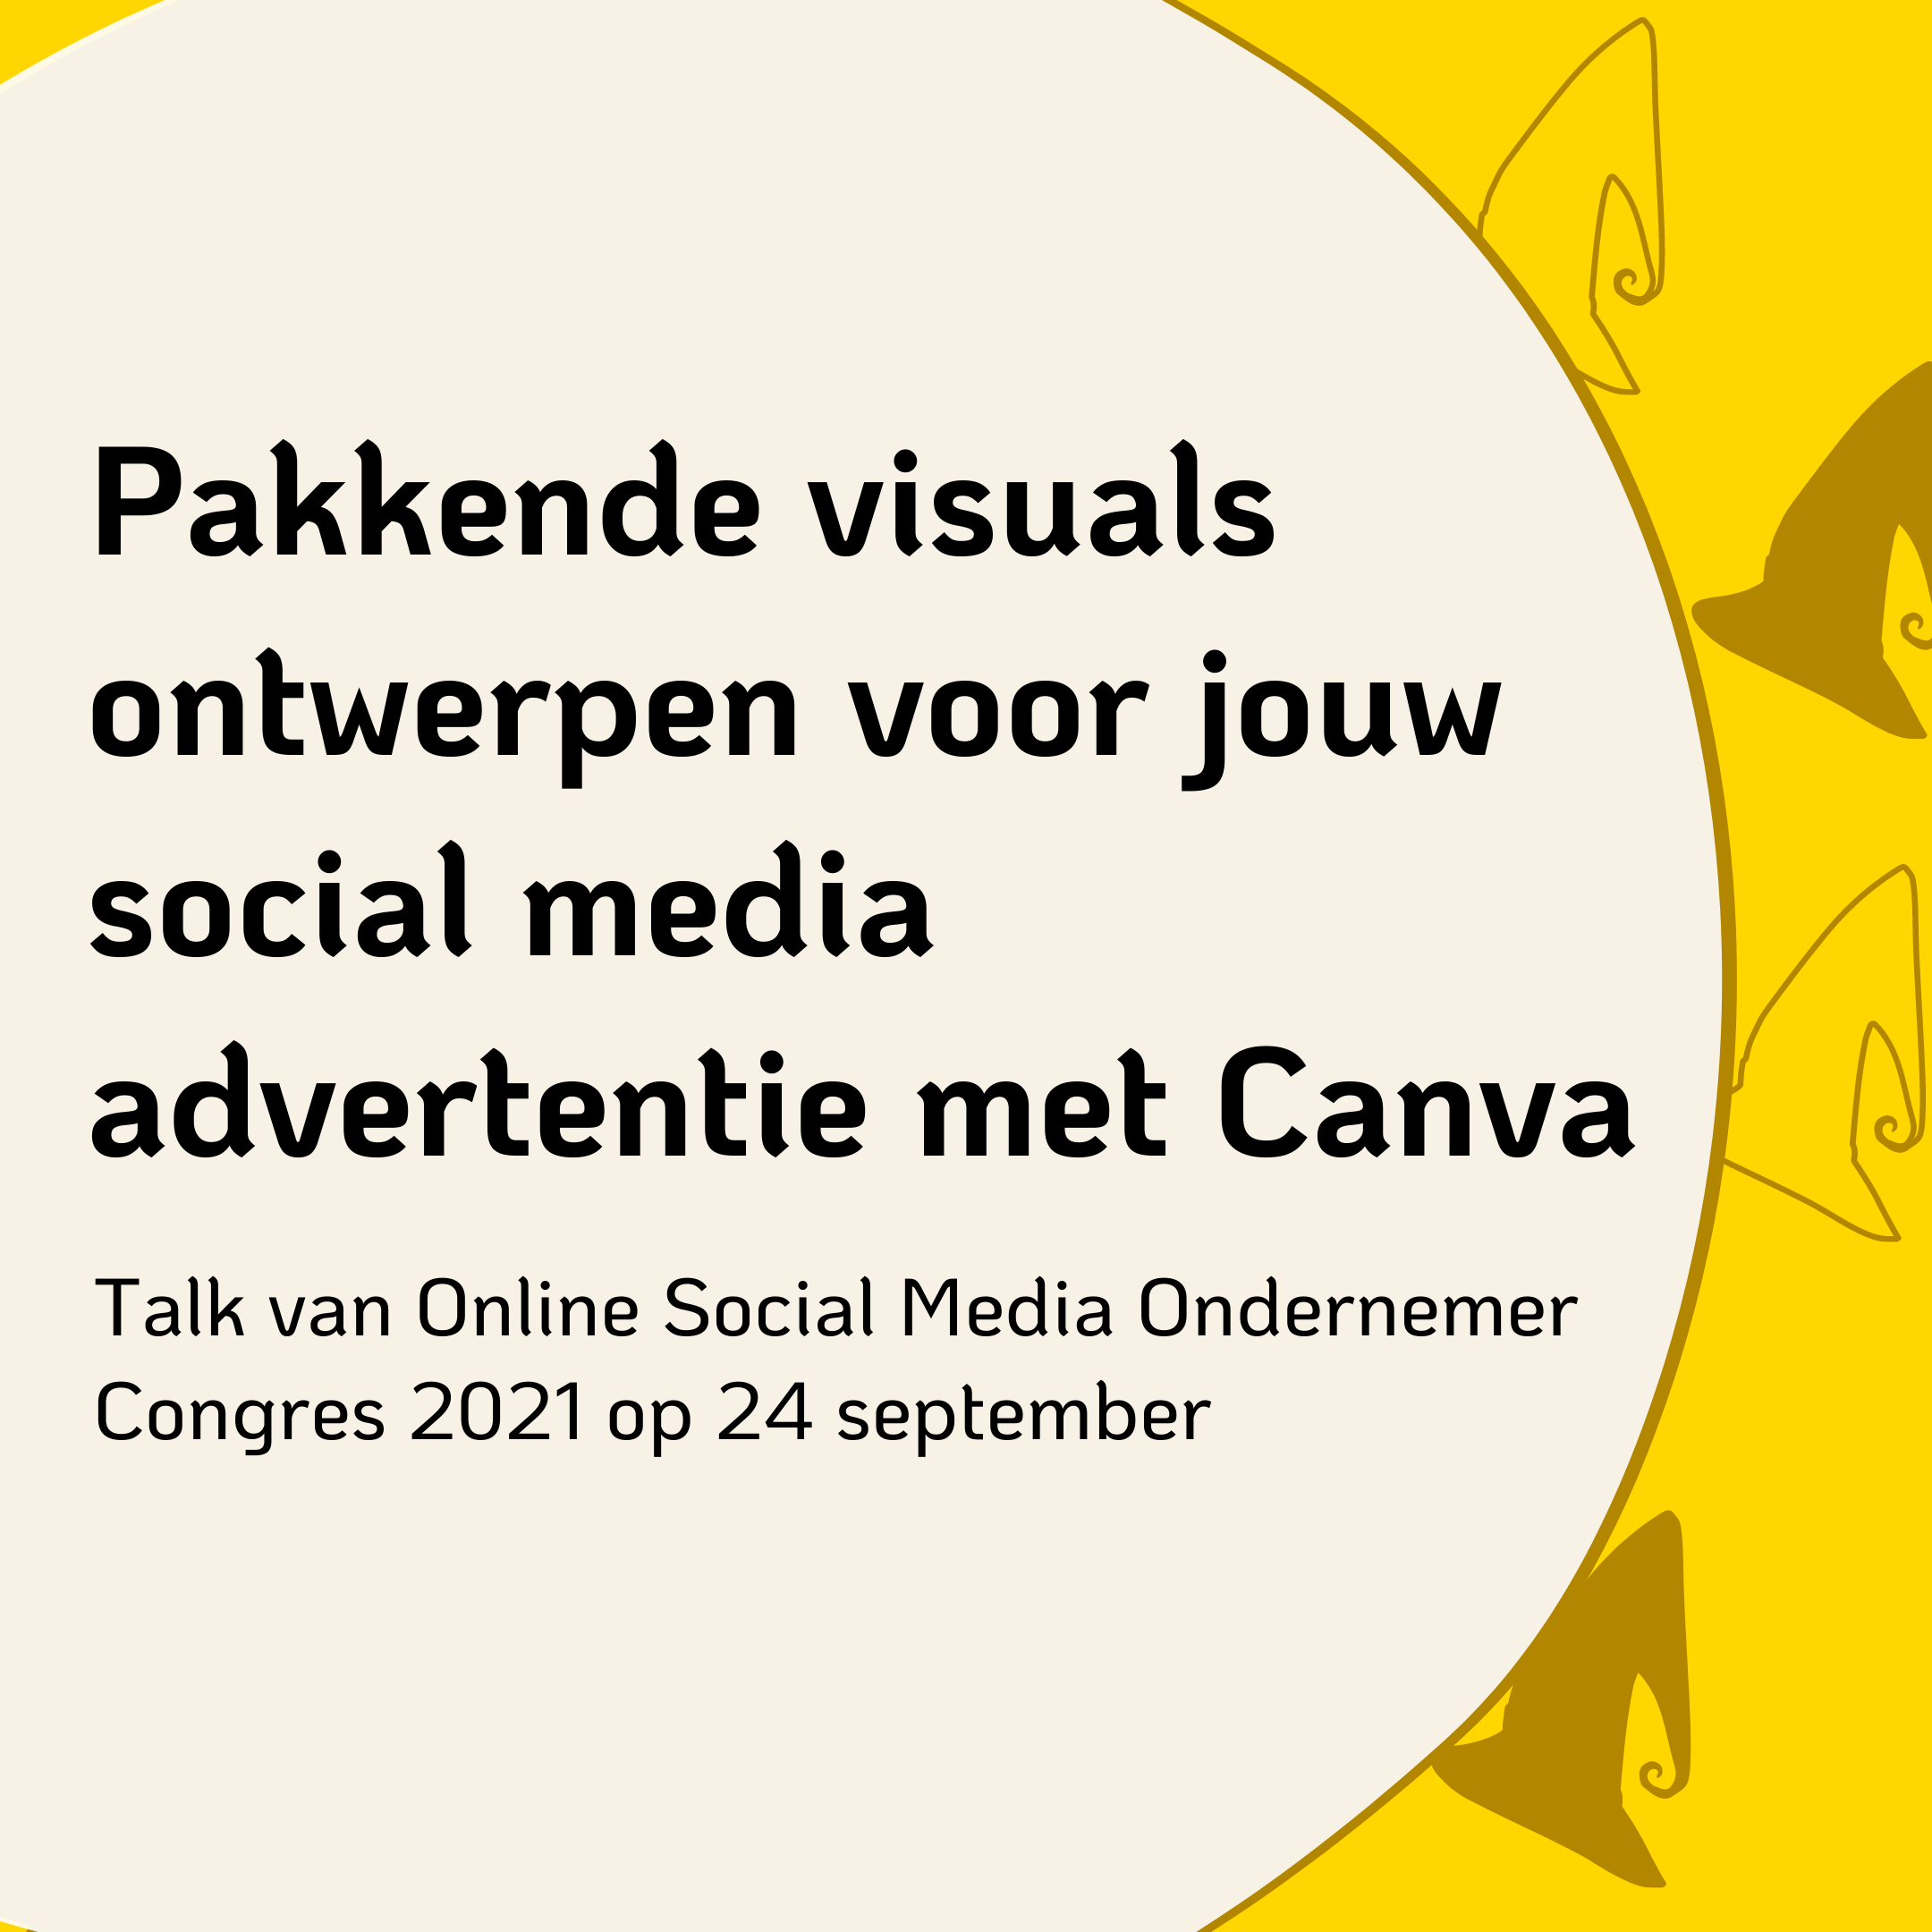 Pakkende visuals ontwerpen voor jouw social media advertentie met Canva